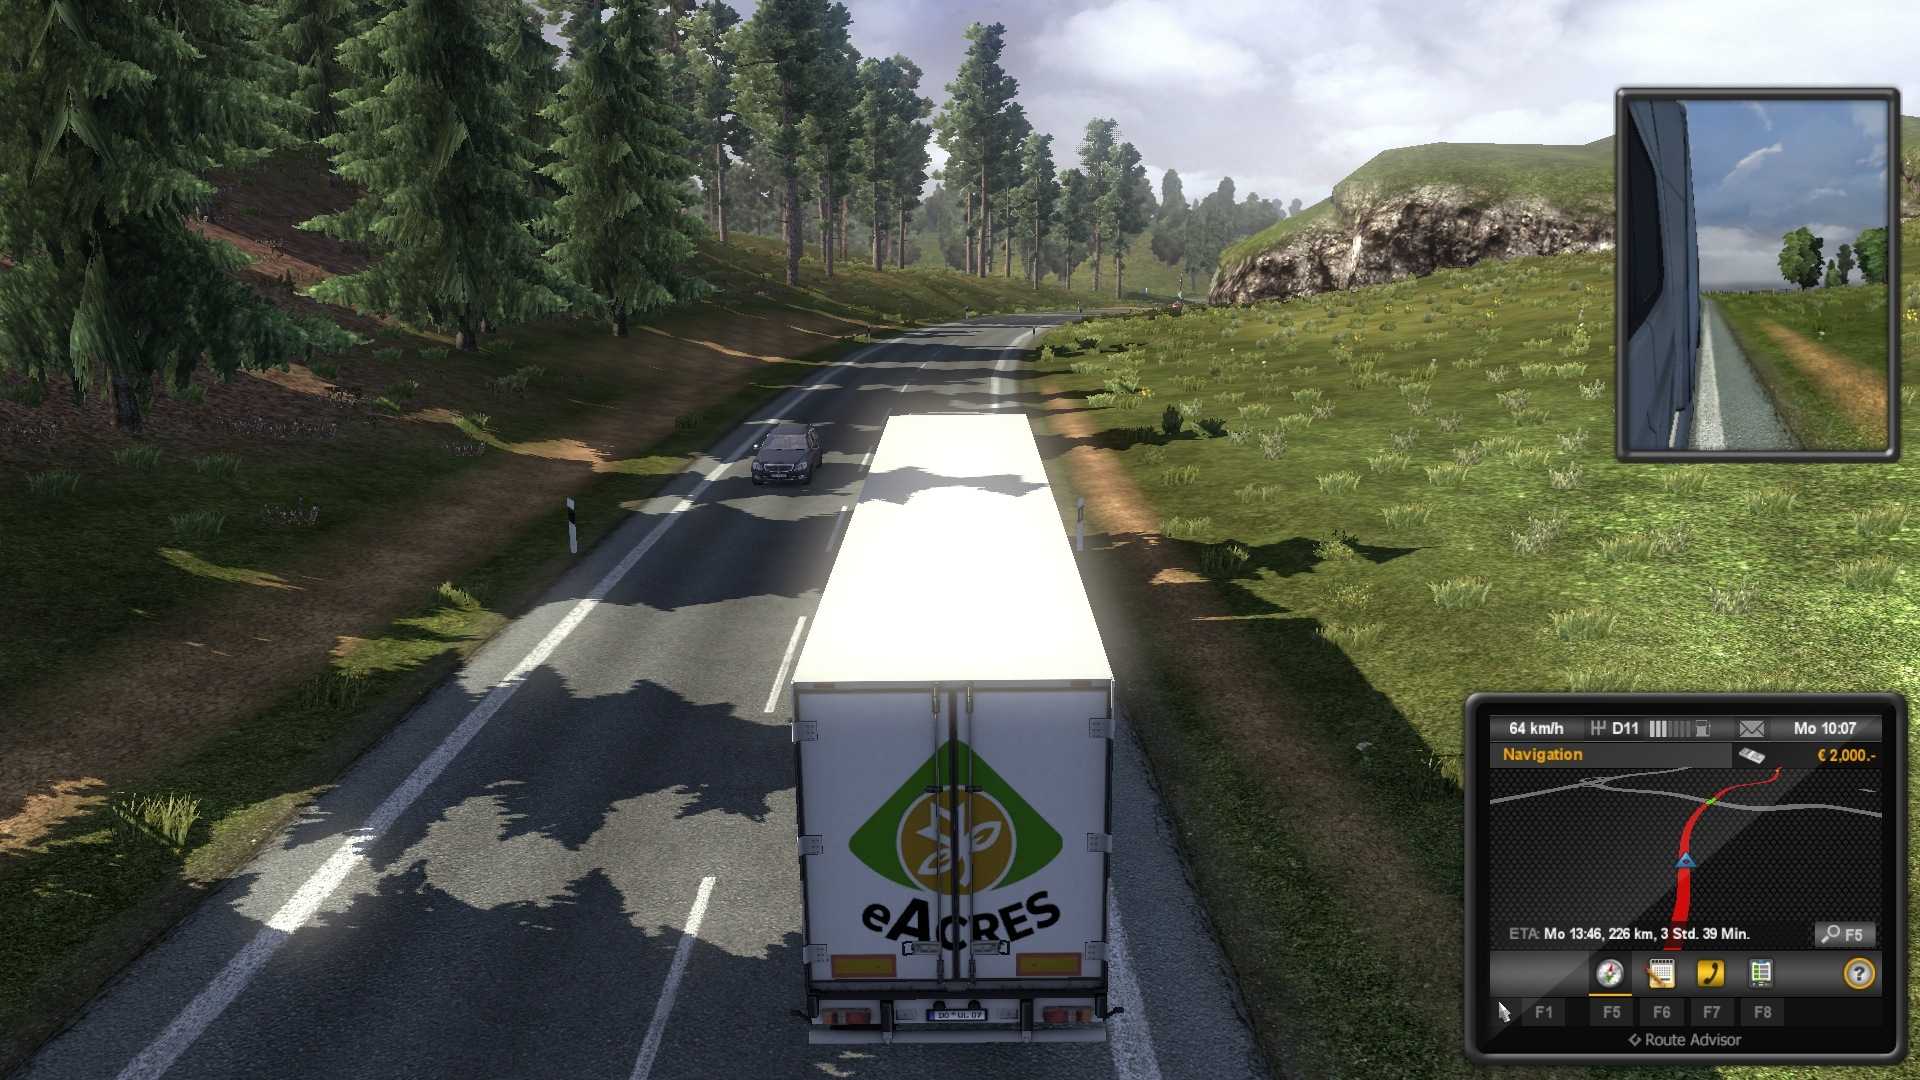 Euro truck simulator 2 перенос сохранений на другой диск